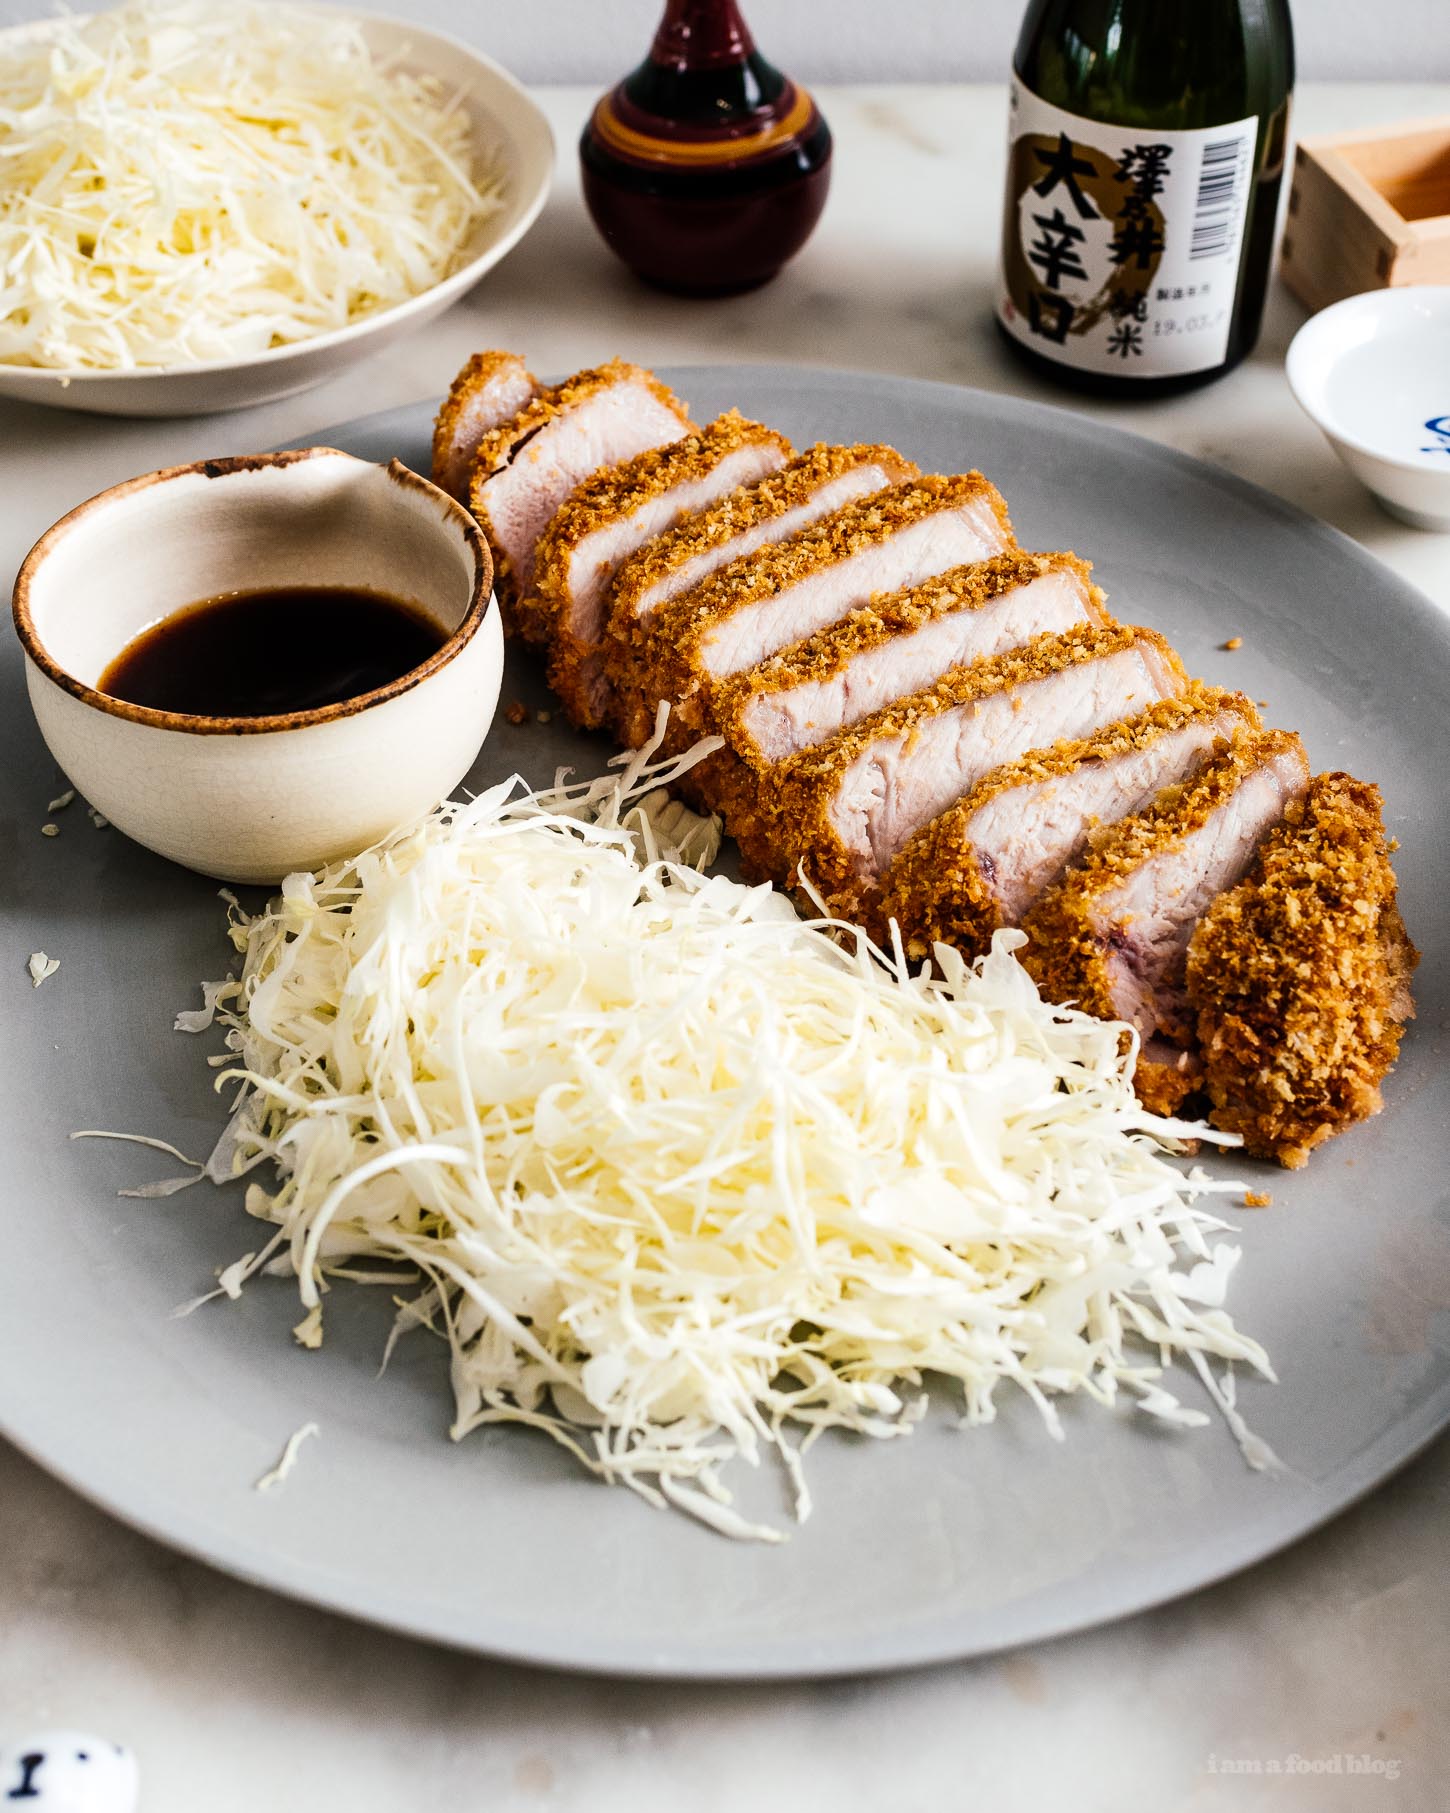 易烤箱烤猪肉Tonkatsu：一个额外的厚厚的，超多汁的猪排完成Tonkatsu风格，用轻盈脆的潘库，只烘烤而不是油炸。#japanesefood #japanese #tonkatsu #porkchop #pork #recipes #inkbaked #dinner #easydinner